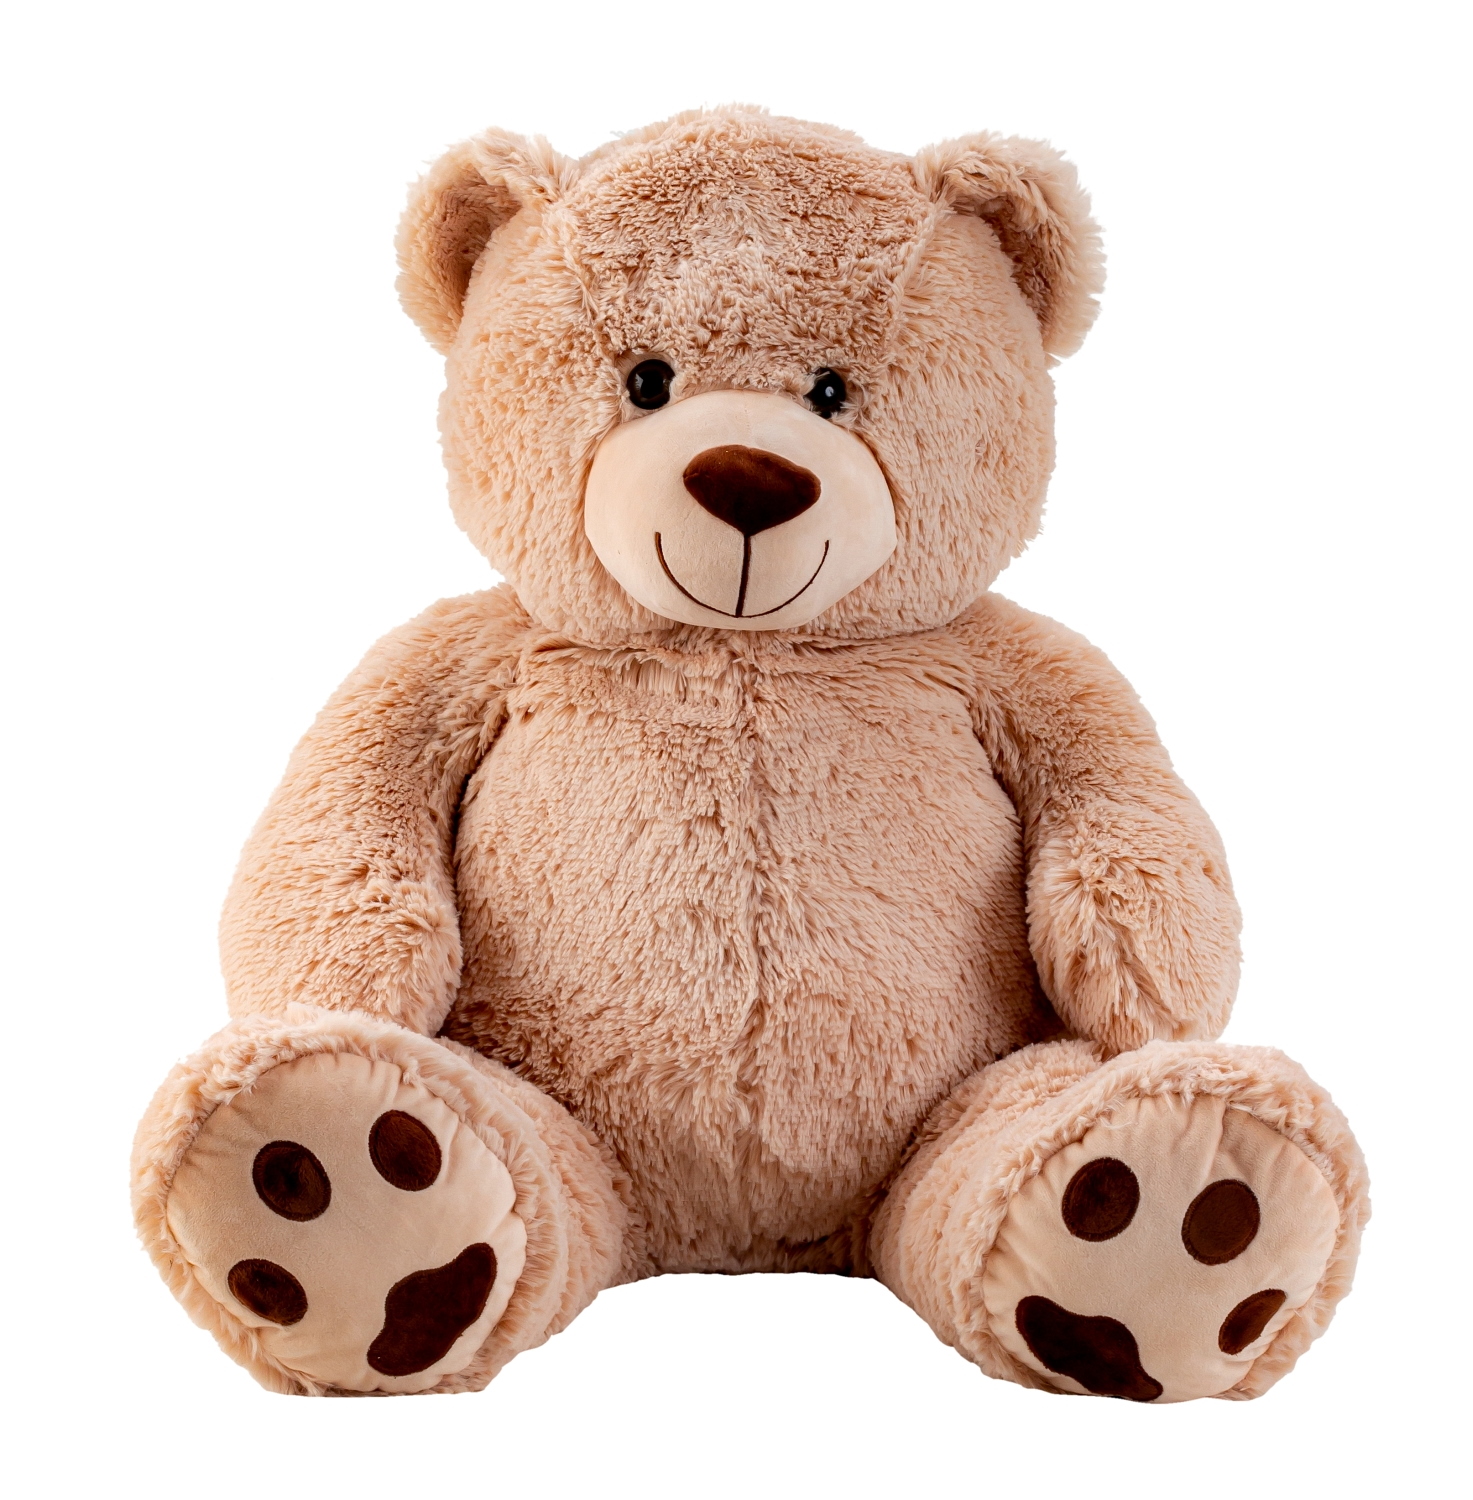 Riesen Teddybär XXL100-190cm samtig weiches Kuscheltier Plüschbär  9281 